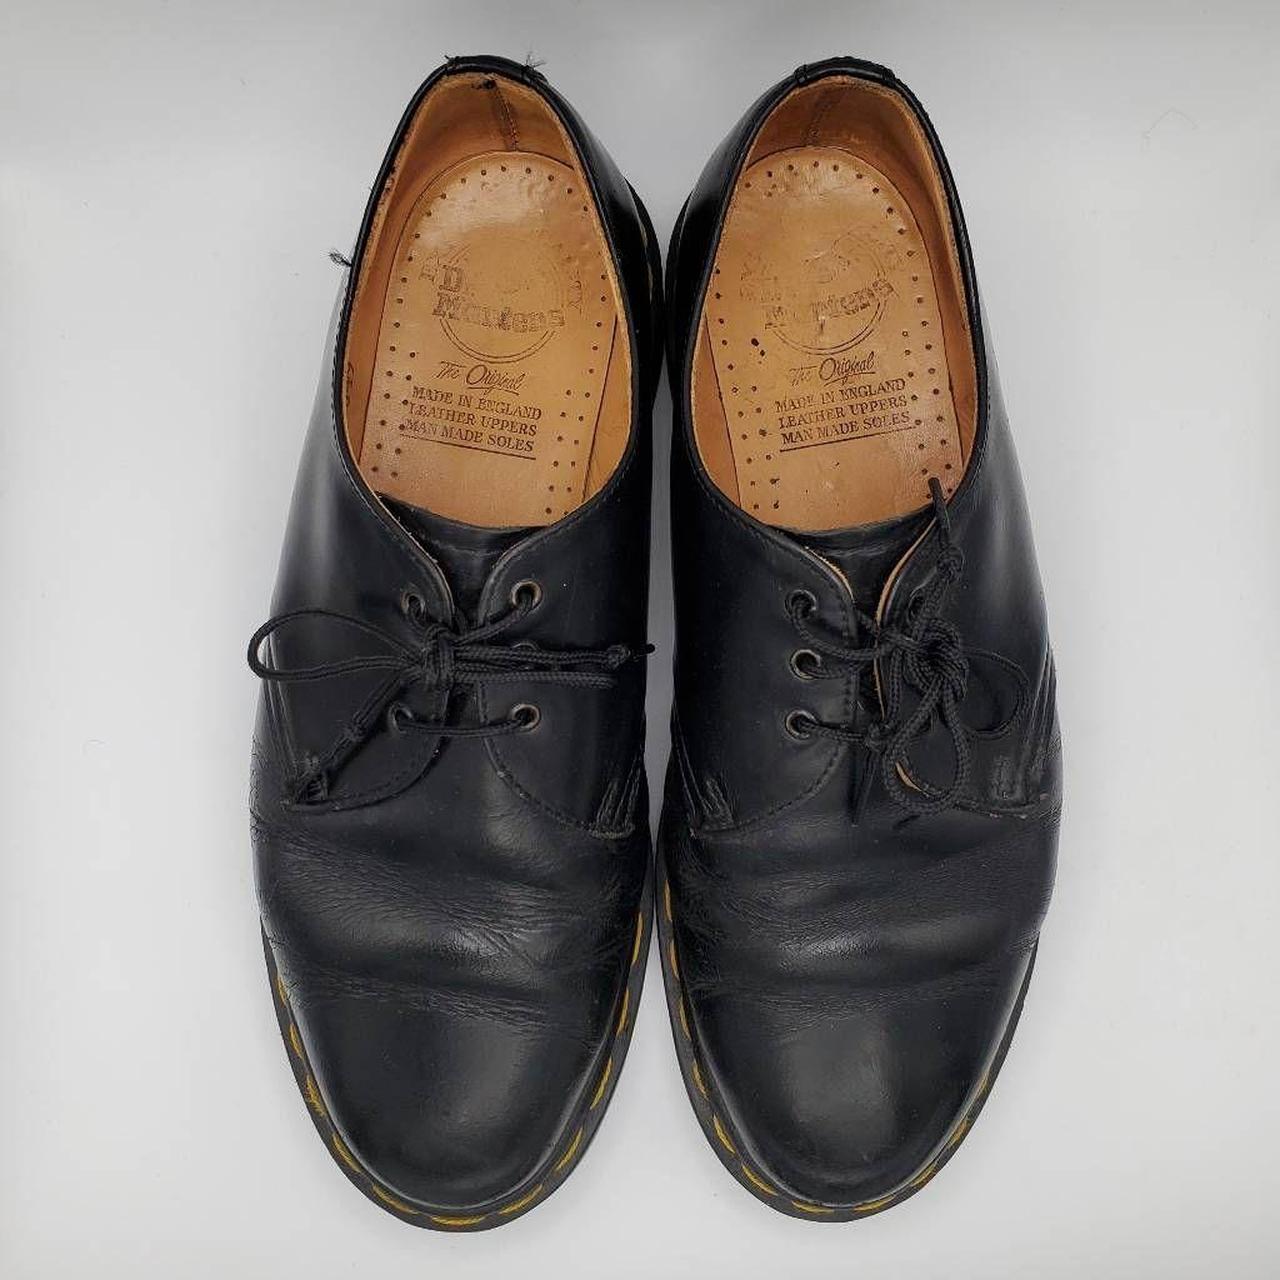 Vintage 80s Dr Martens Black Leather Docs, Doc Shoes... - Depop